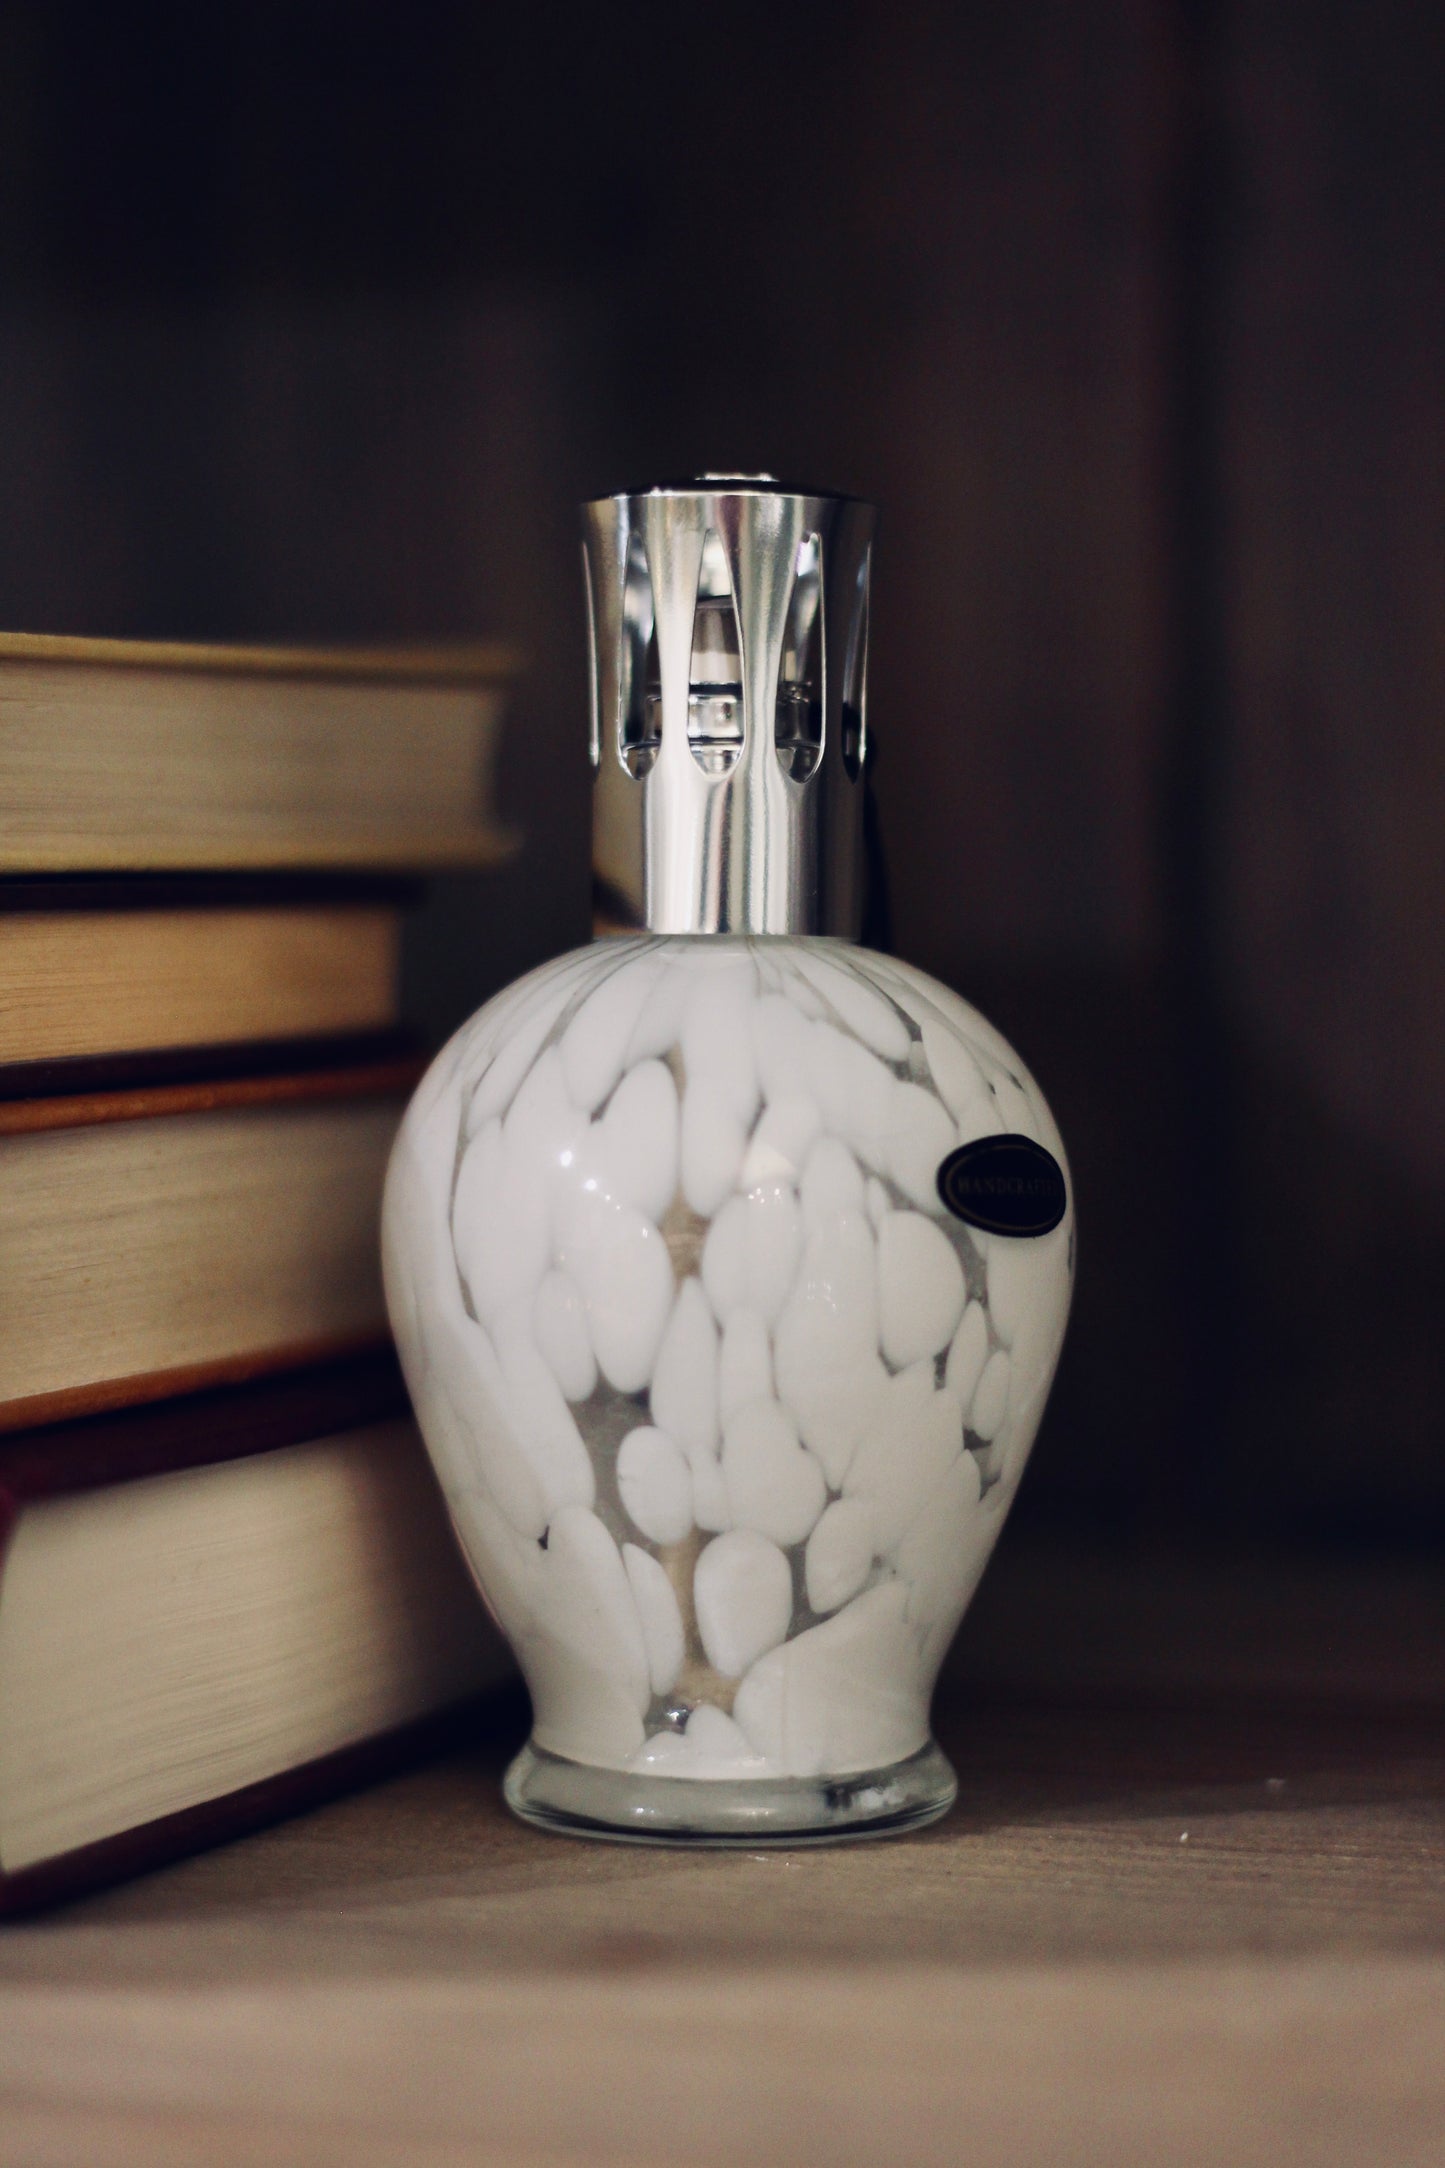 Snow White Fragrance Lamp